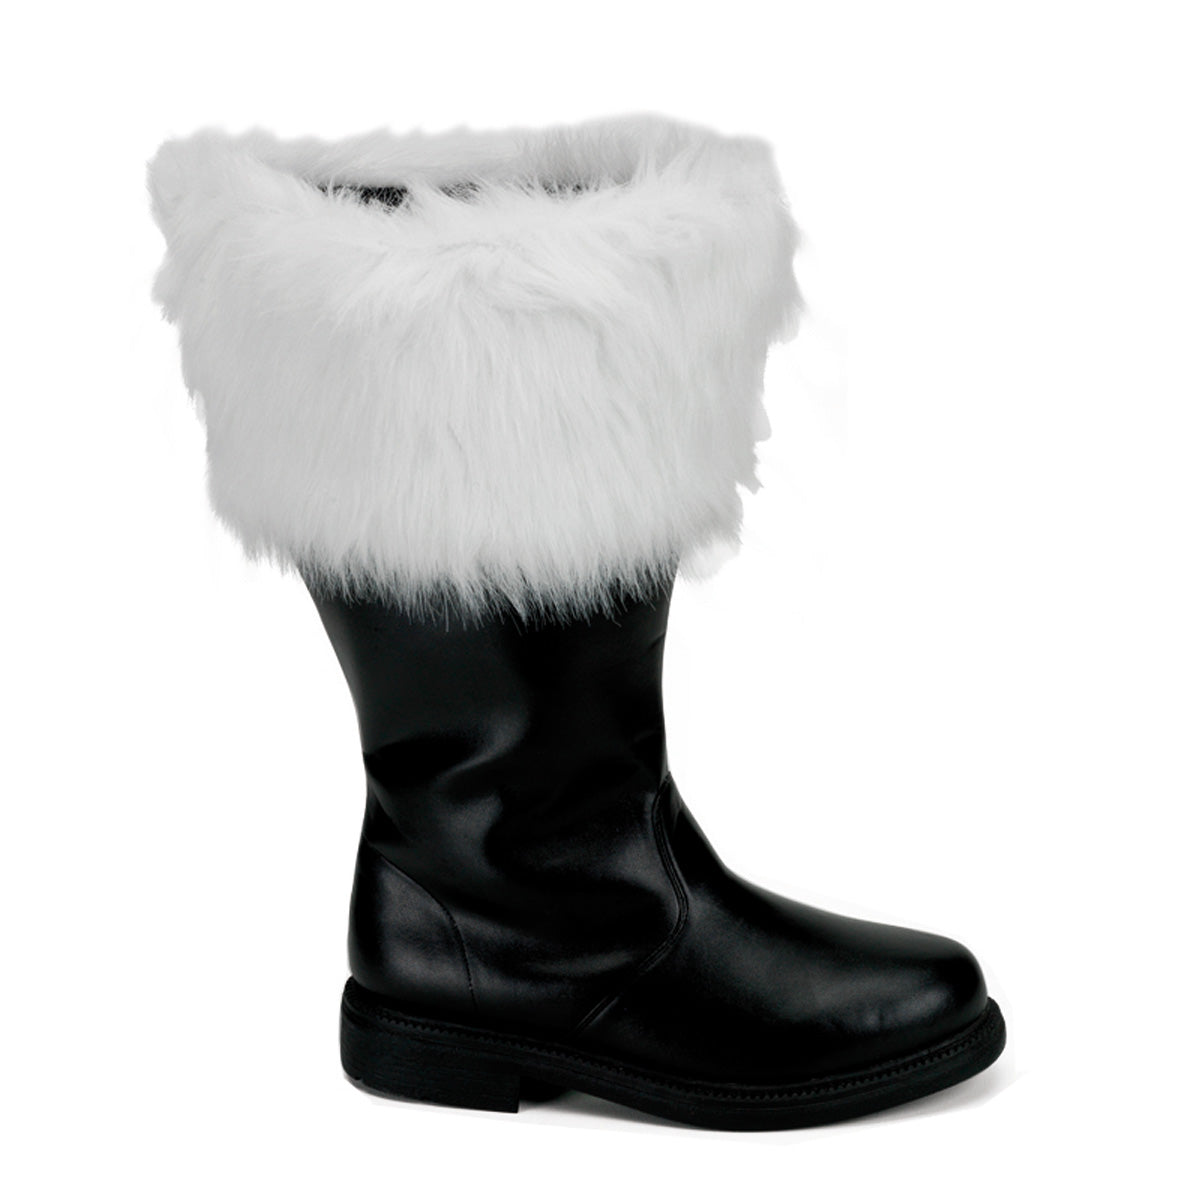 SANTA-106WC Black White Faux Fur Boots